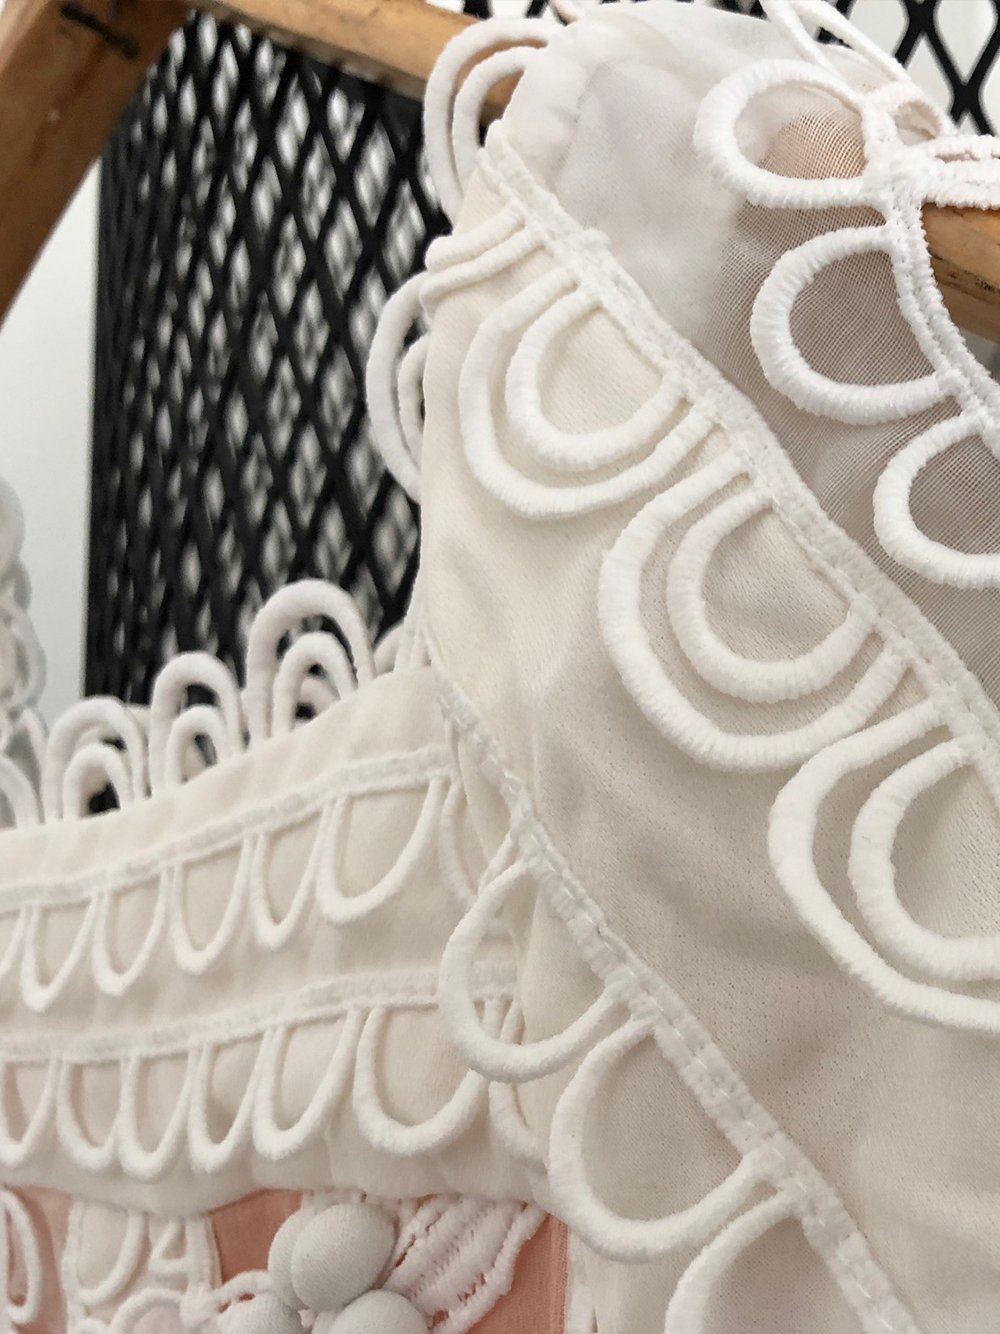 White Ruffled Lace Dress